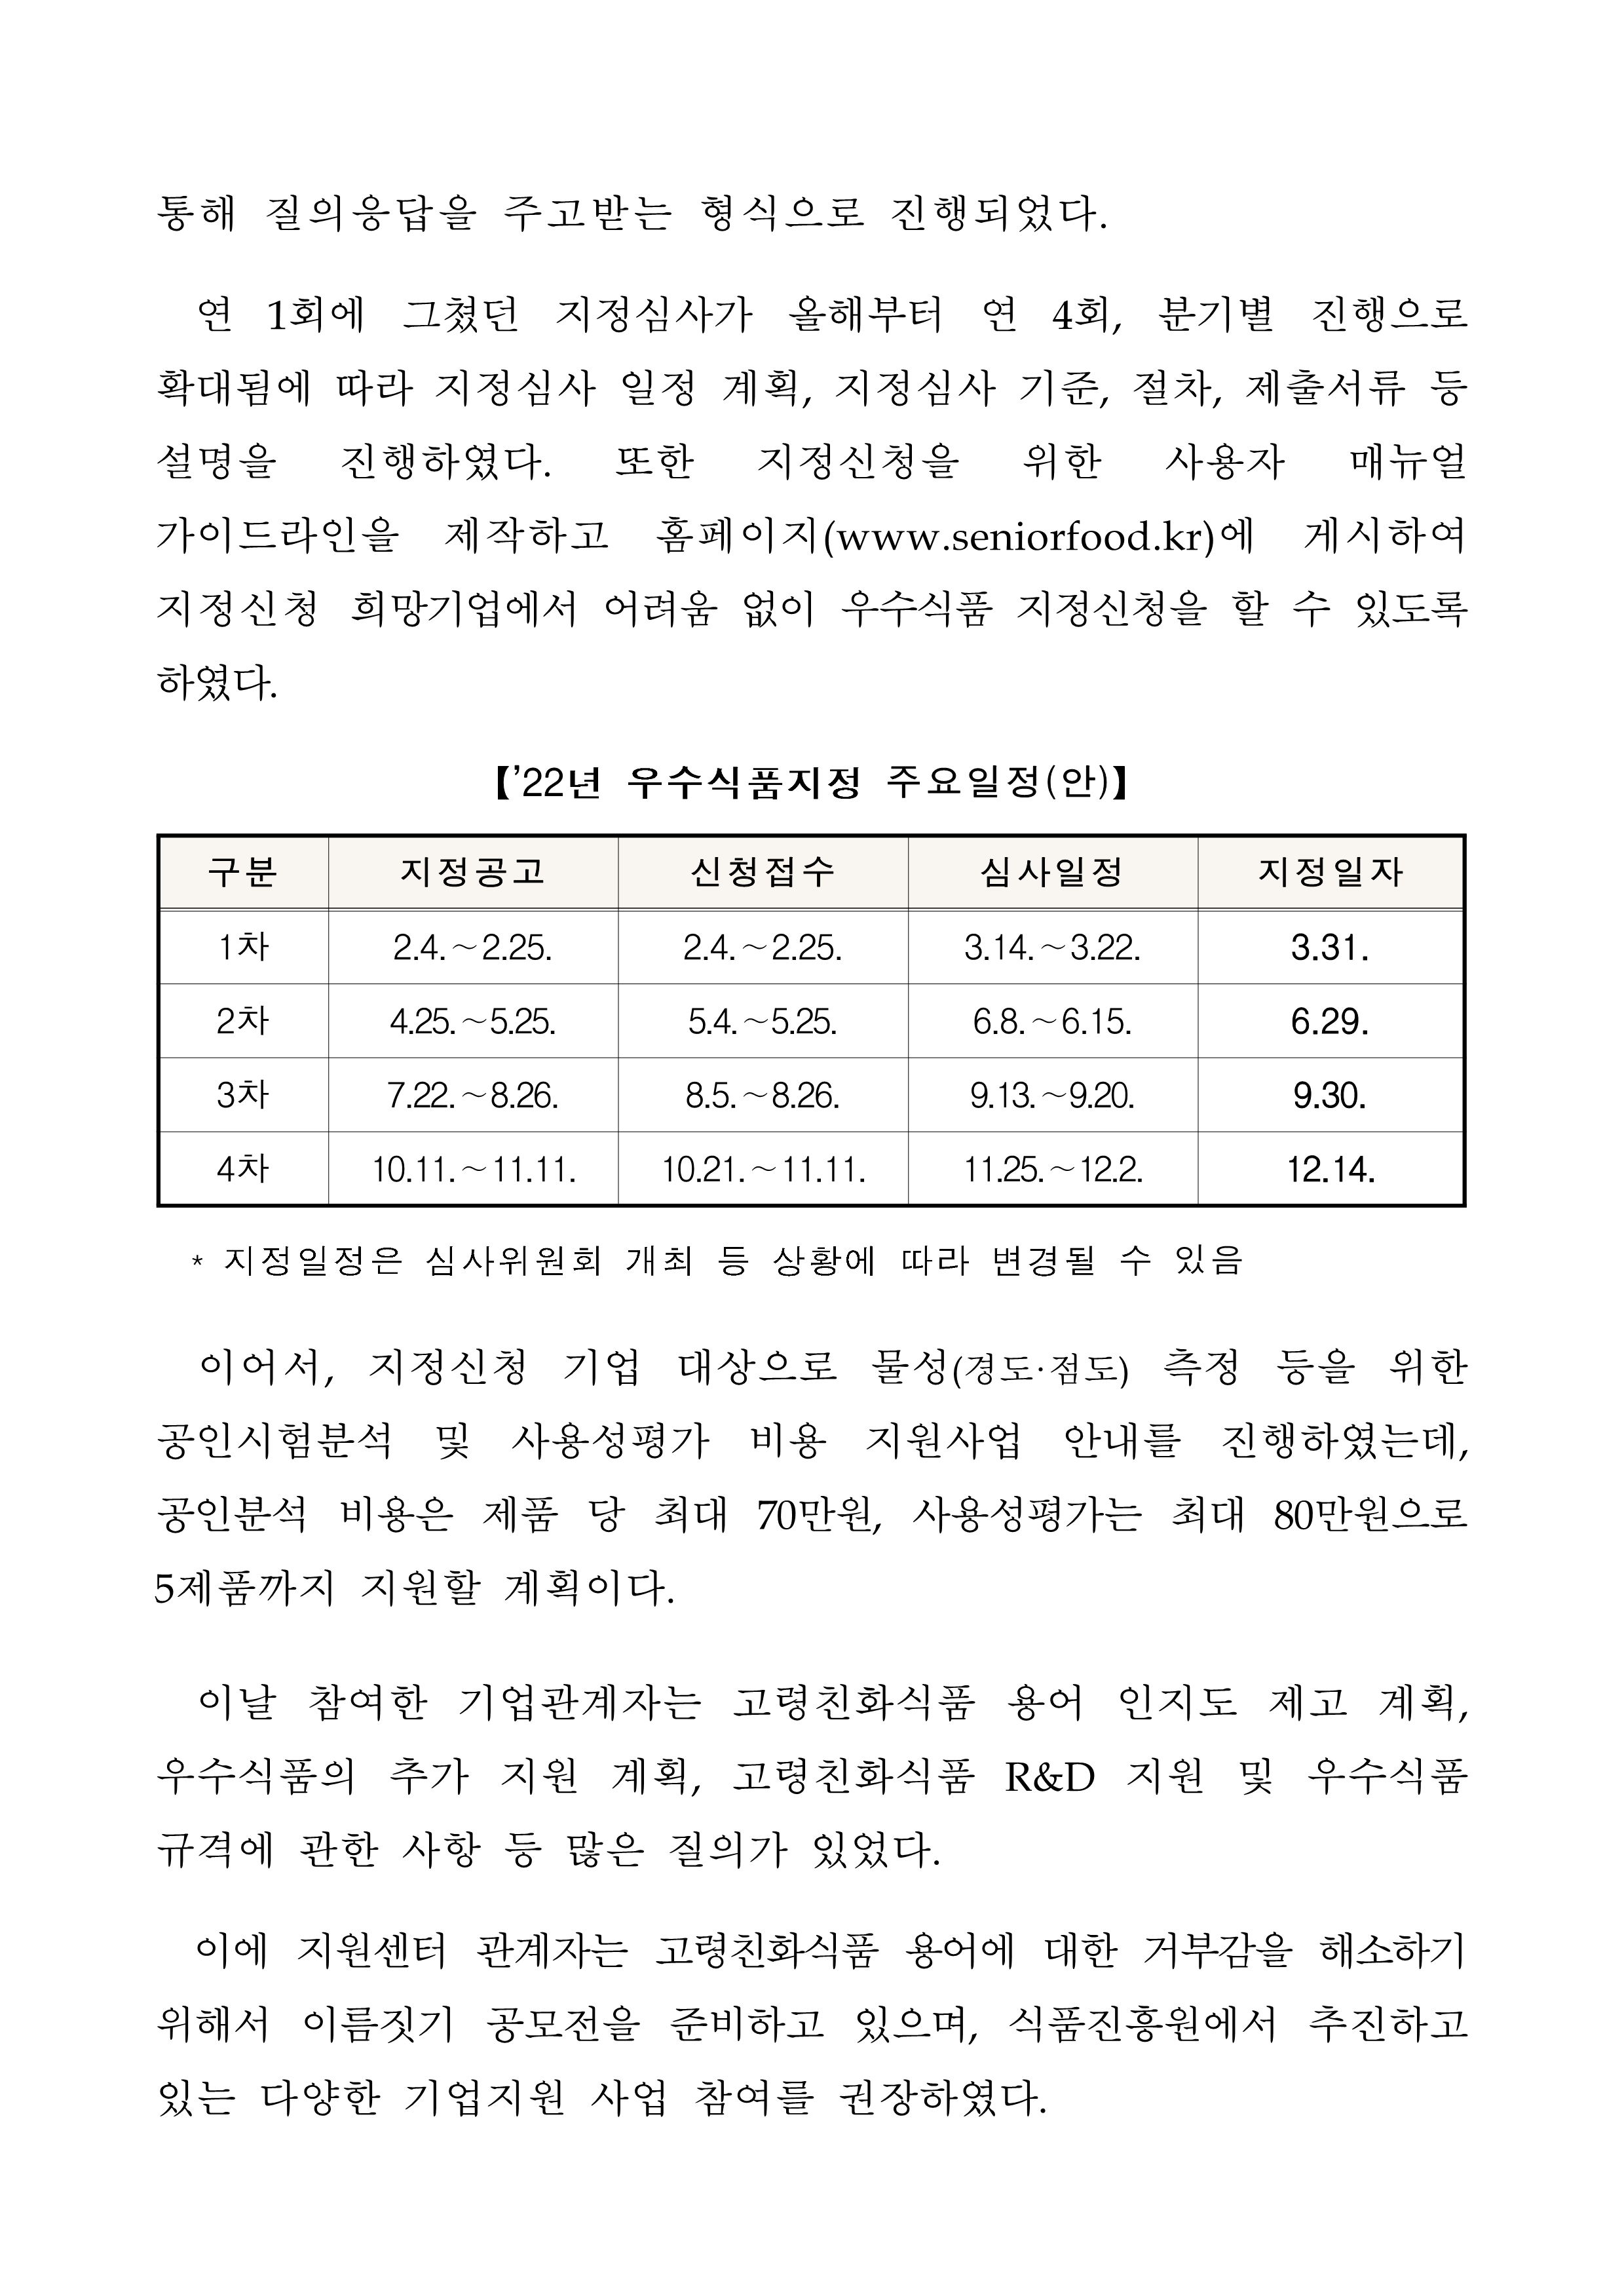 식품진흥원, 22년 고령친화우수식품 지정제도 온라인 설명회 개최 -자세한 내용은 첨부파일에서 확인 가능